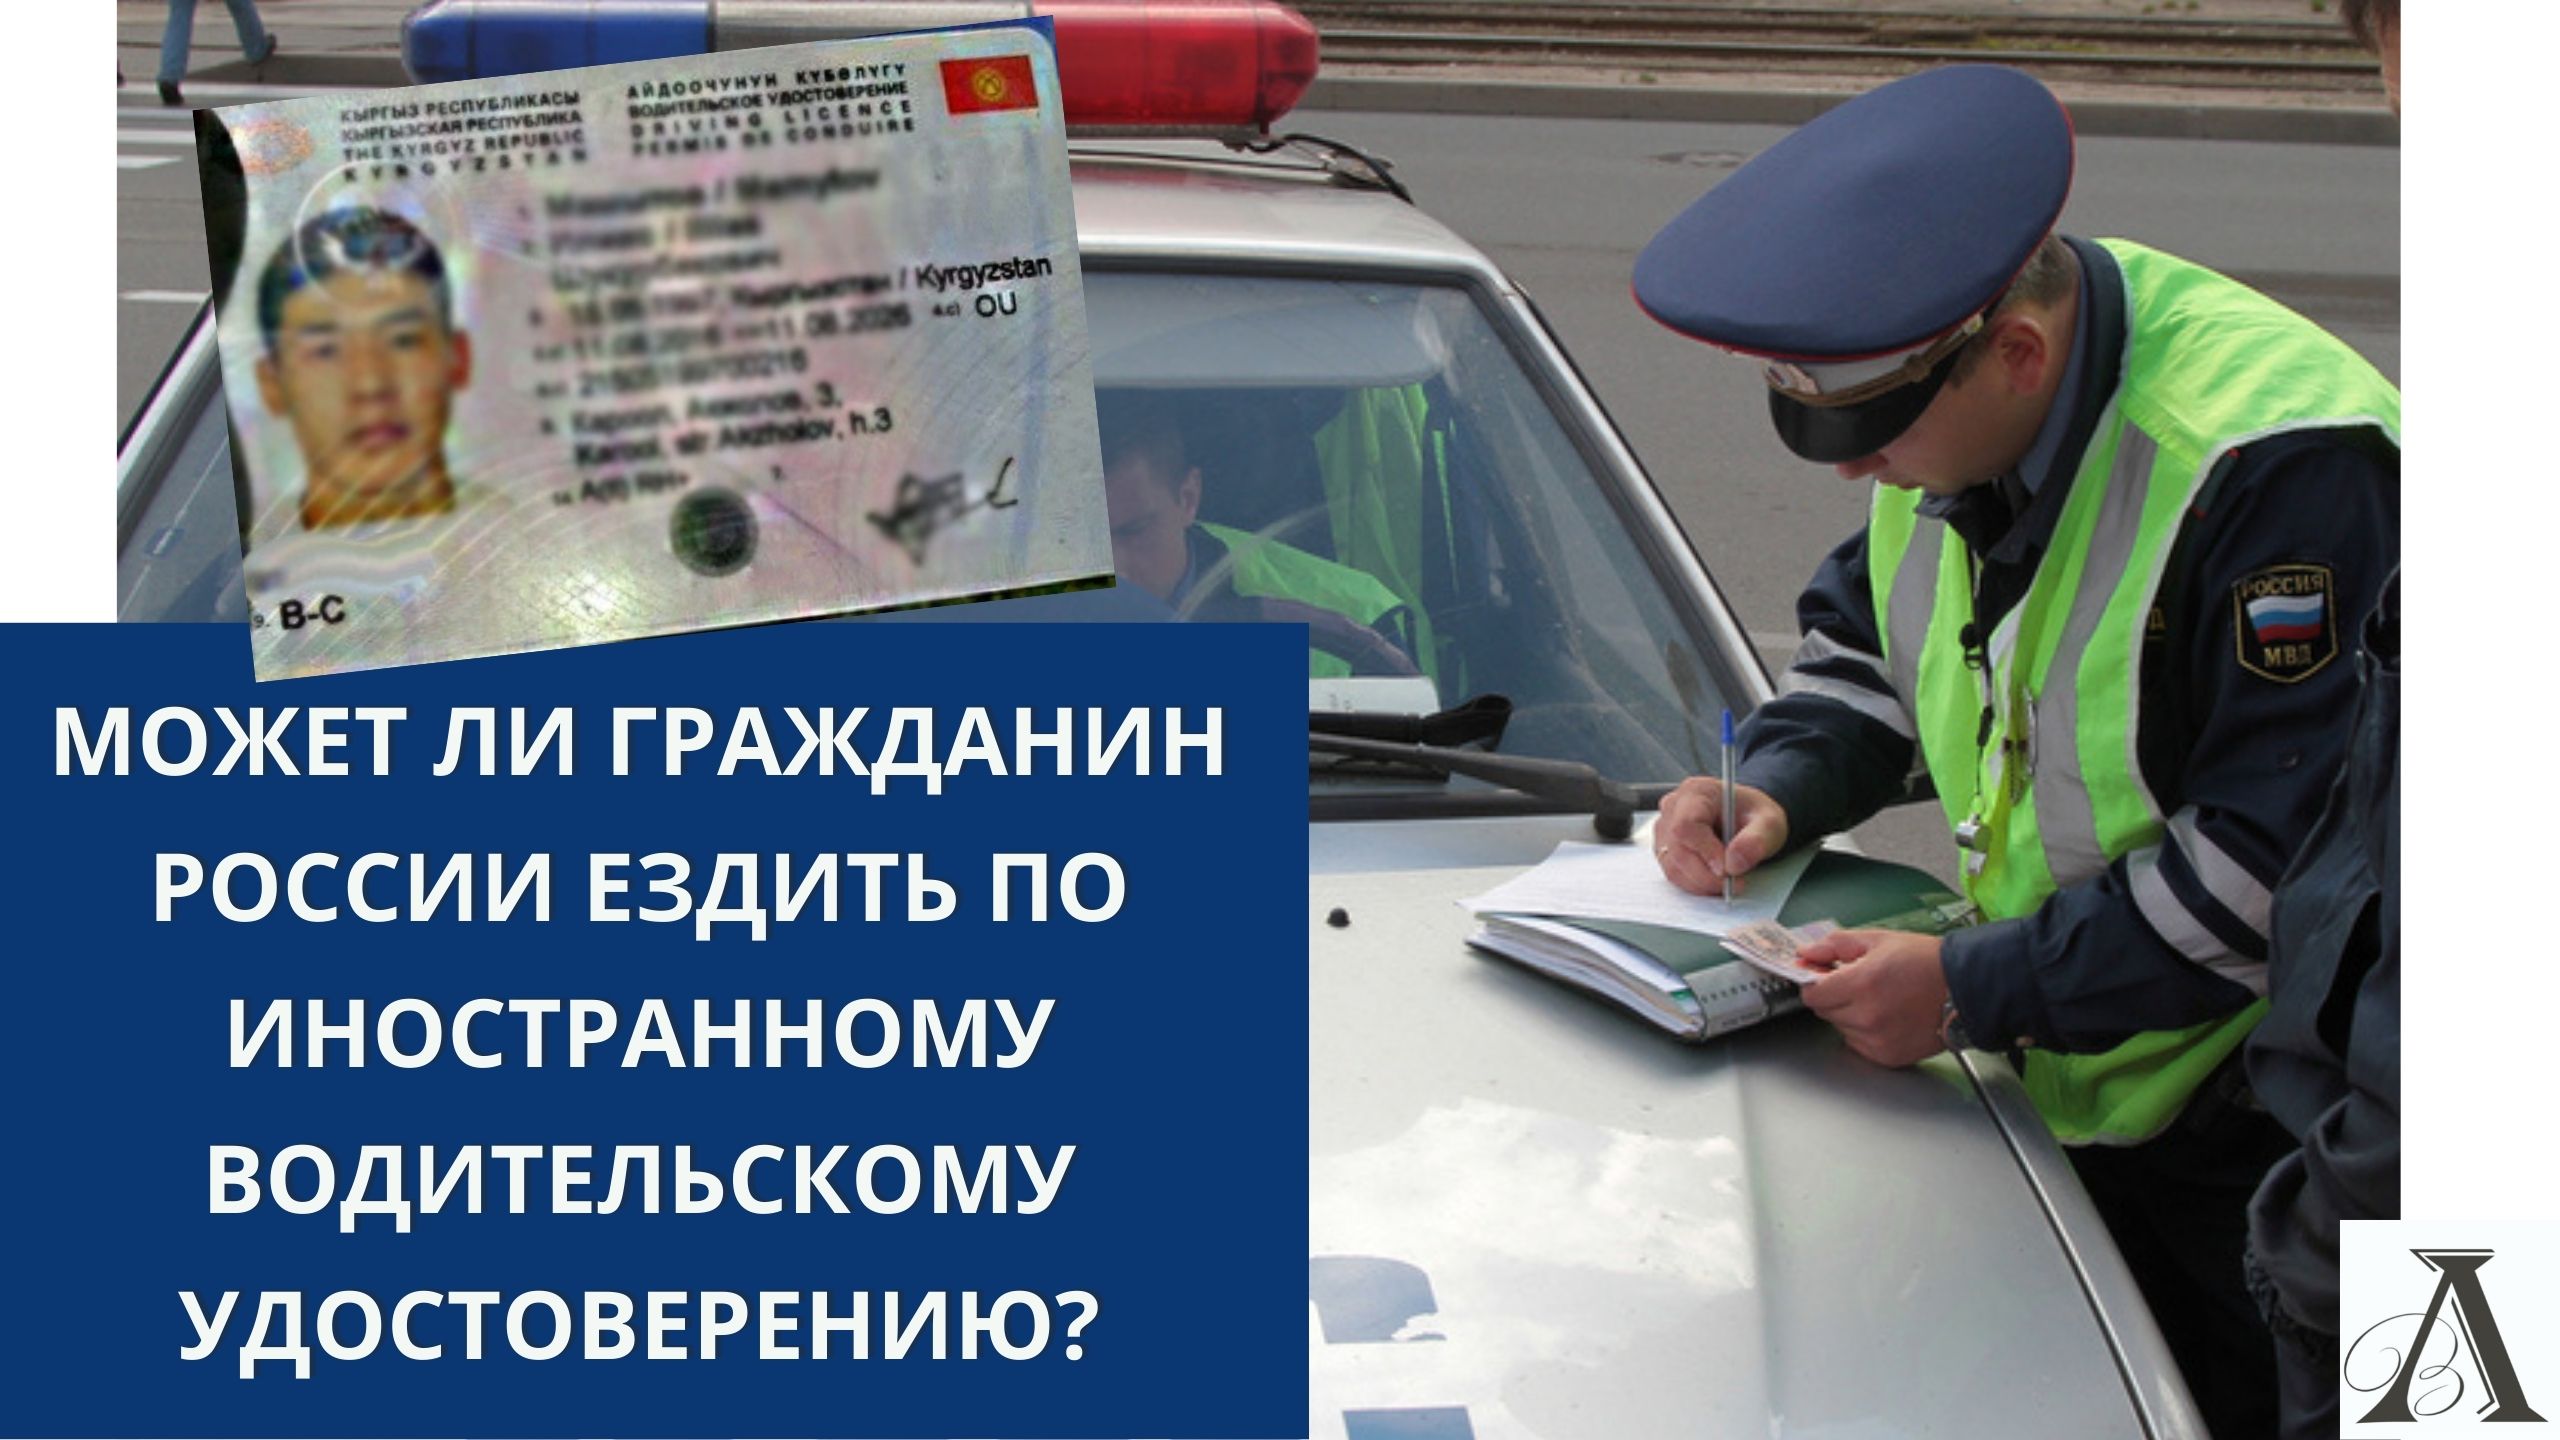 Получение водительского удостоверения российского